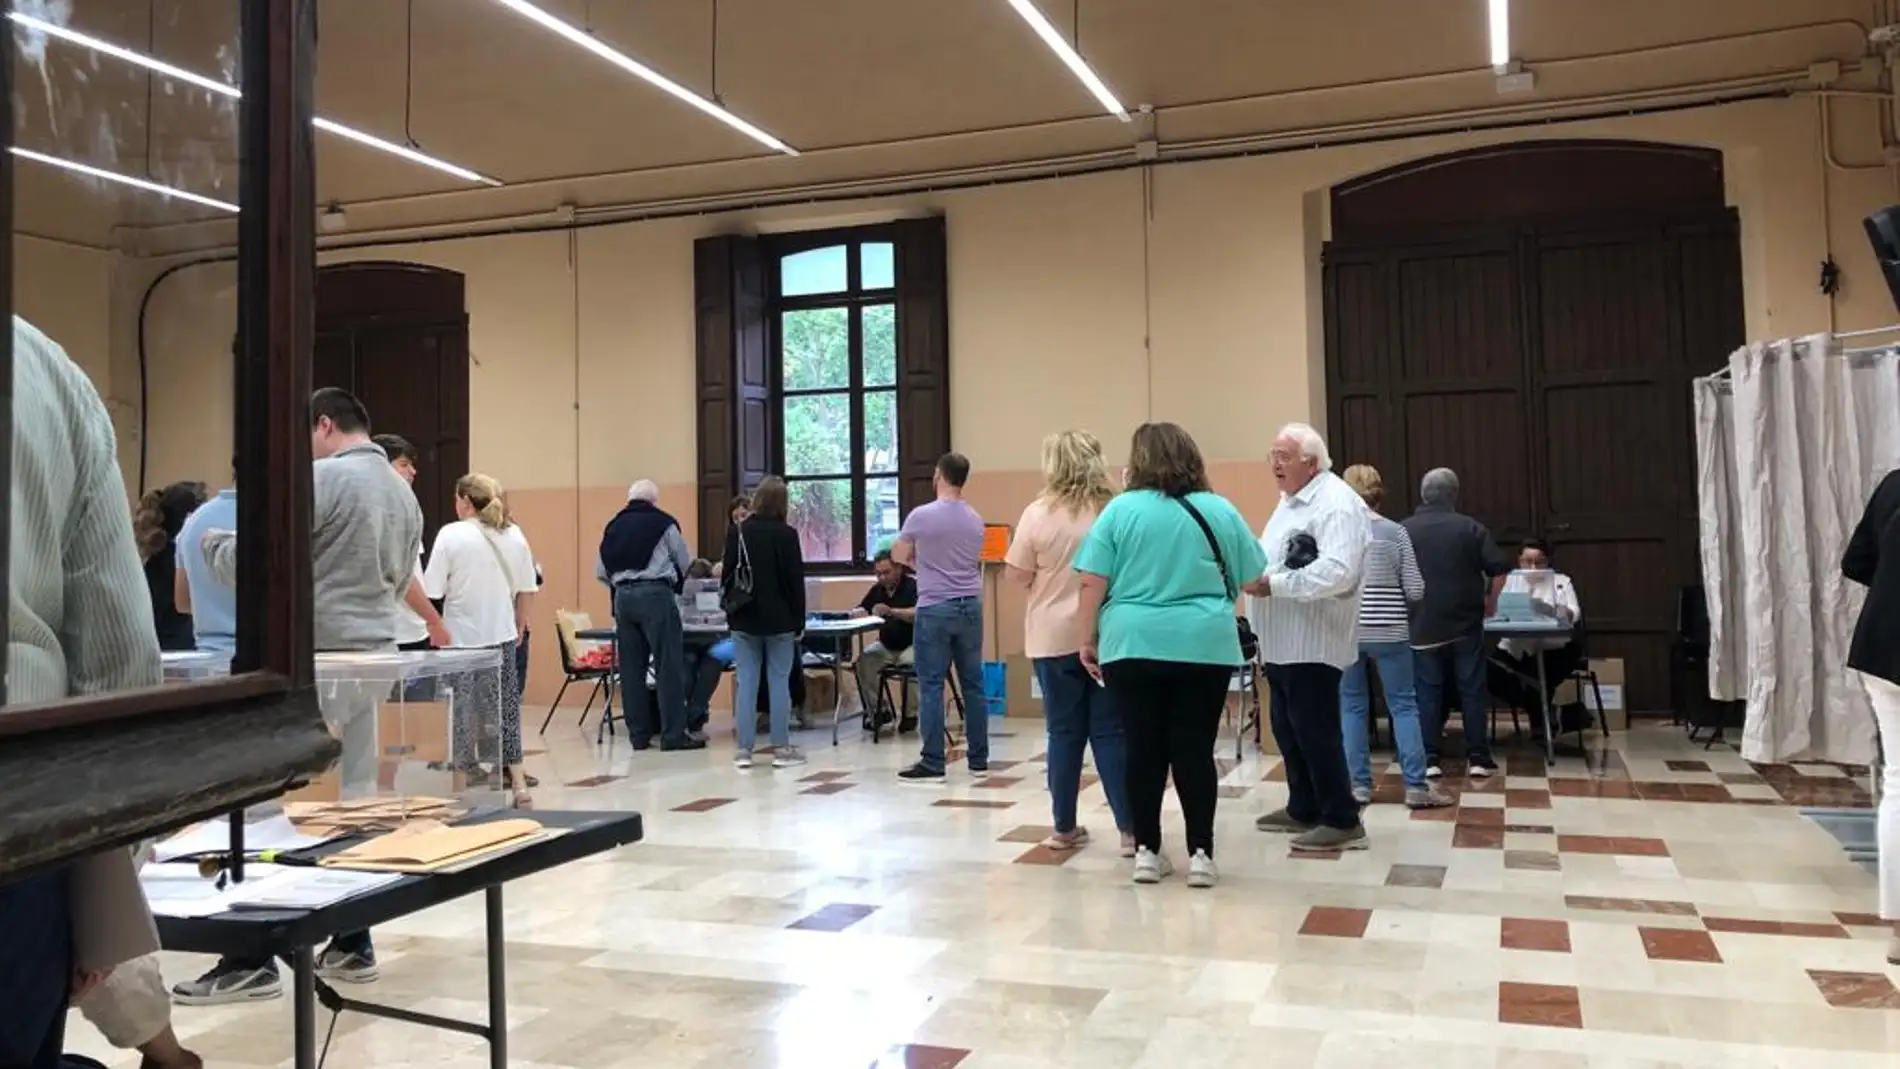 Algunos ciudadanos de Baleares votando en el Centre cultural de s'Escorxador de Palma 